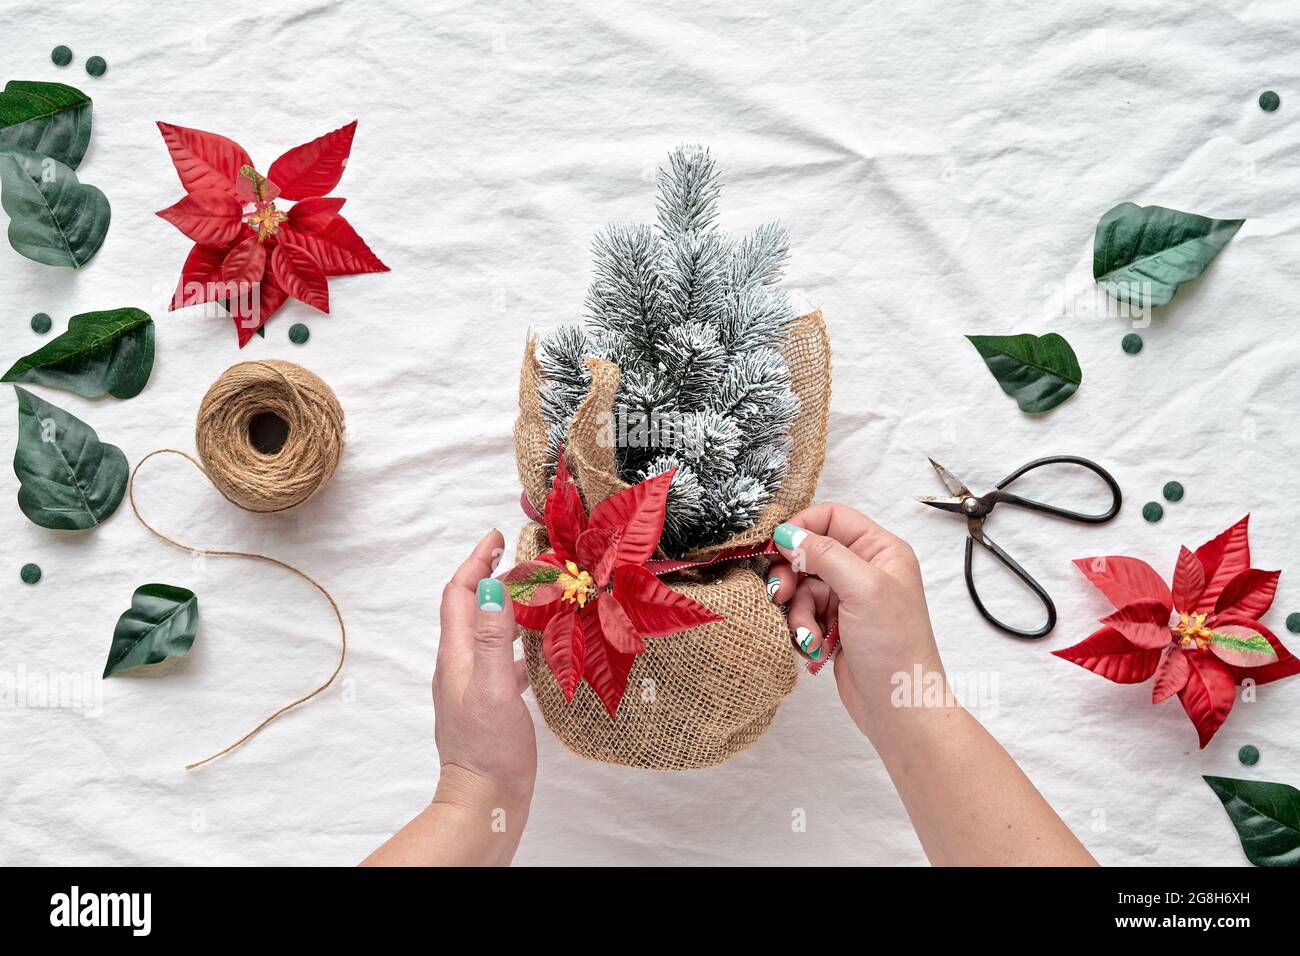 Appartement de Noël avec poinsettia, arbre de Noël en pot enveloppé de toile de fond blanche en main. Brindilles dépolies, corde de chanvre, ciseaux, rouge Banque D'Images